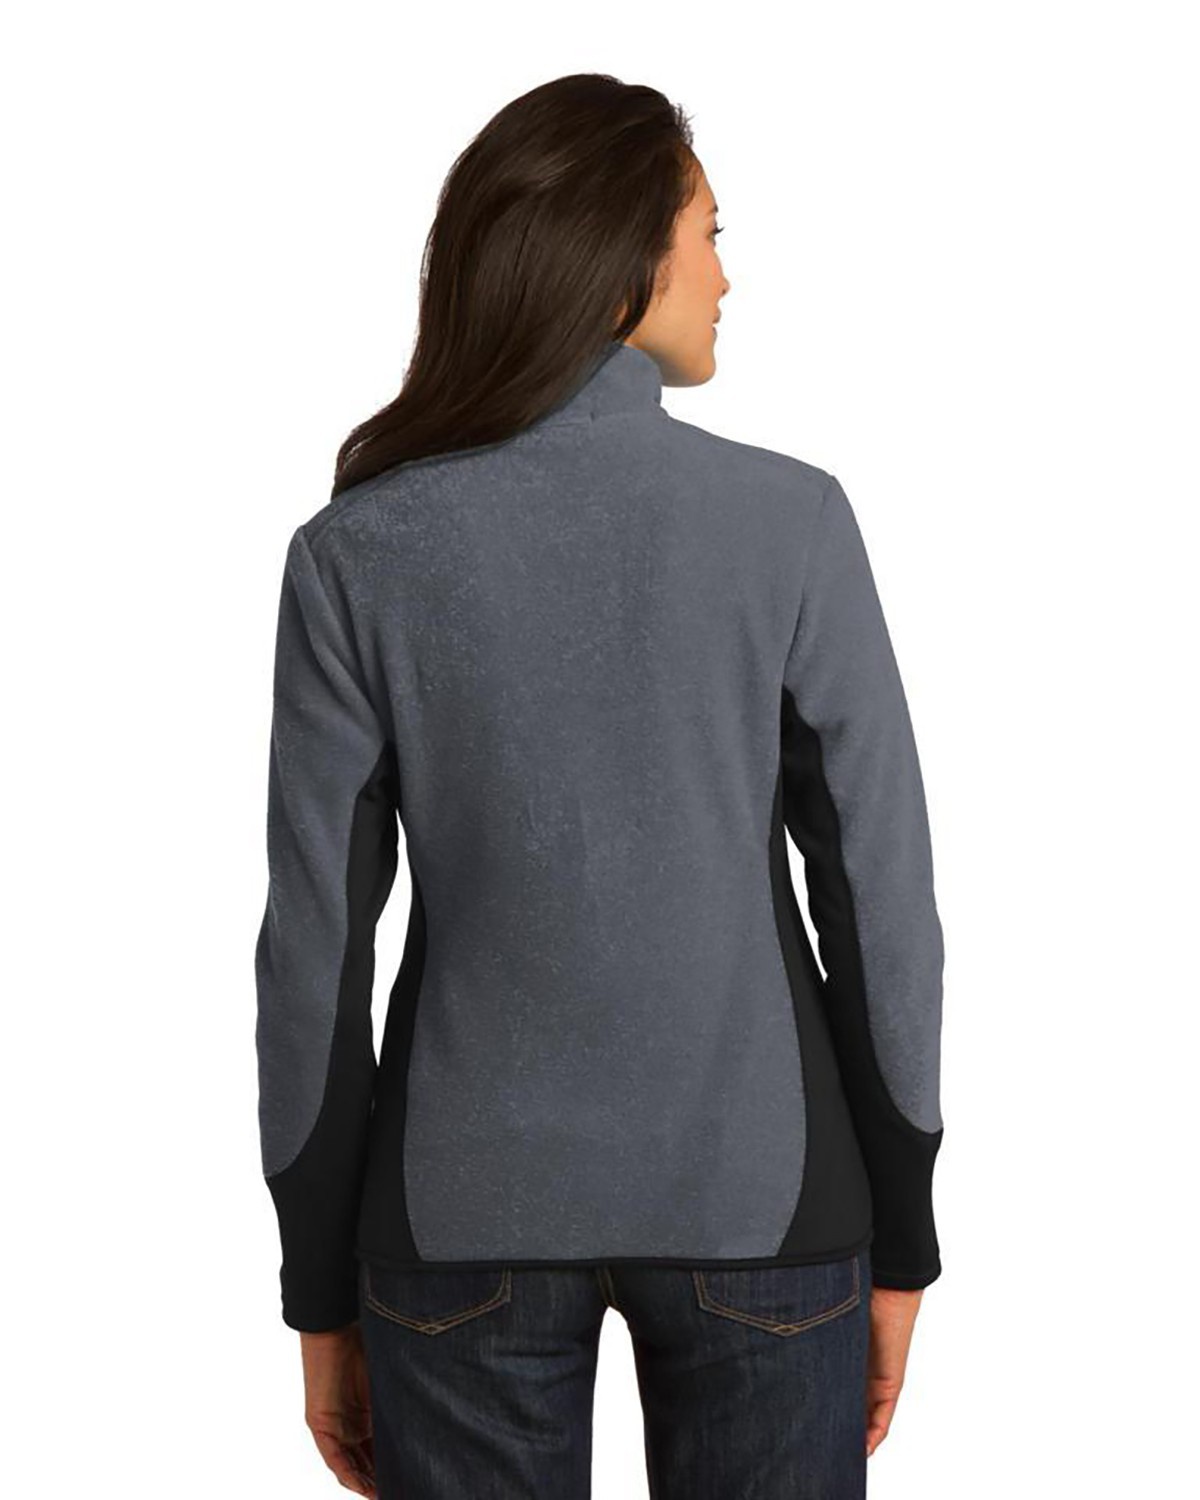 'Port Authority L227 Ladies R-Tek Pro Fleece Full-Zip Jacket'